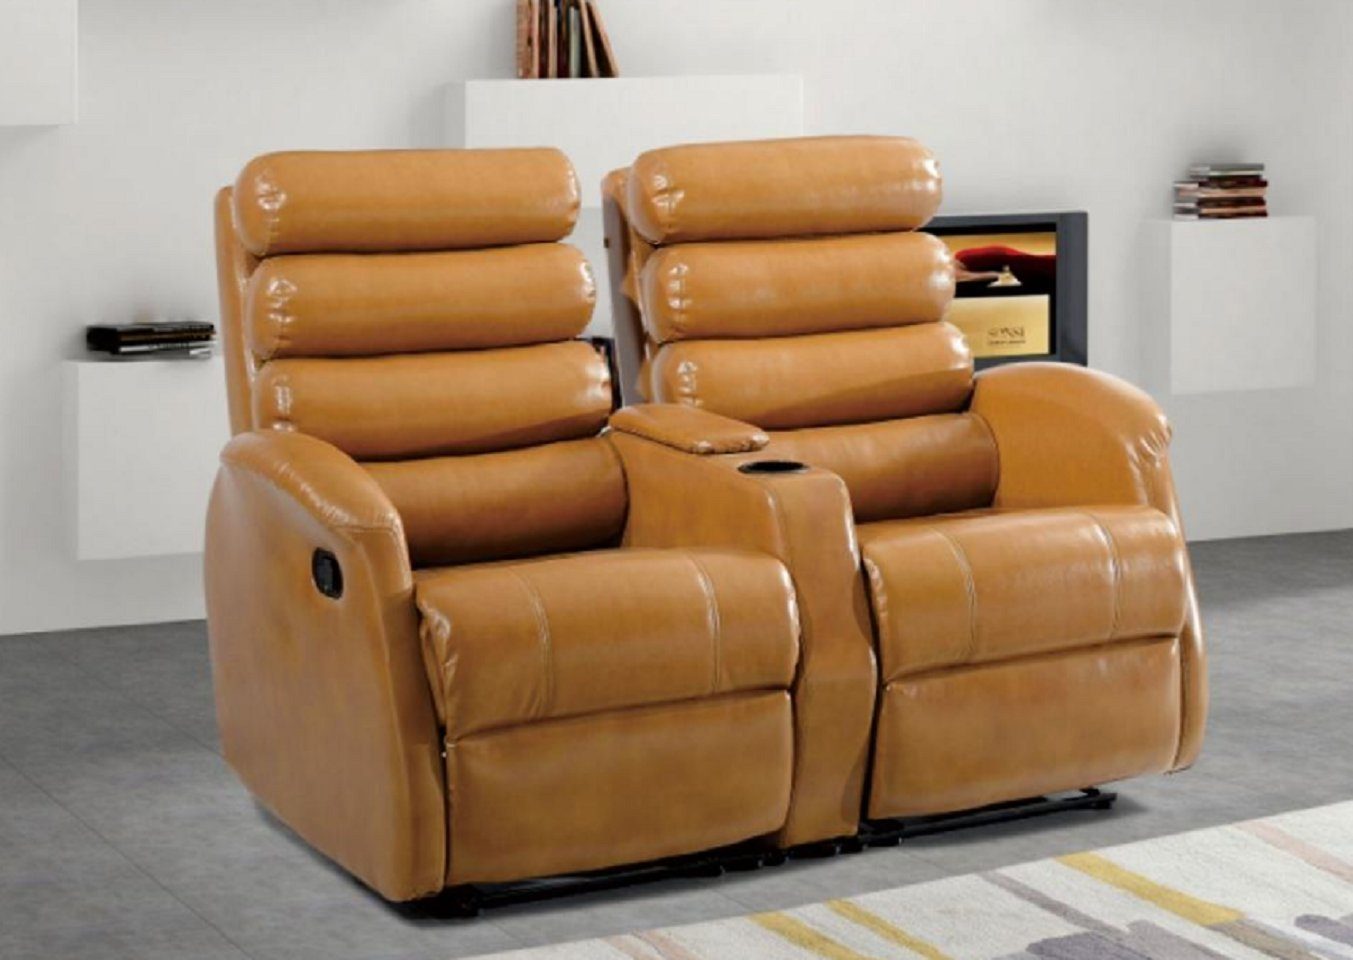 JVmoebel 2-Sitzer Braun Sofa Luxus Wohnzimmer Leder Modern Design Möbel Neu, 1 Teile, Made in Europe